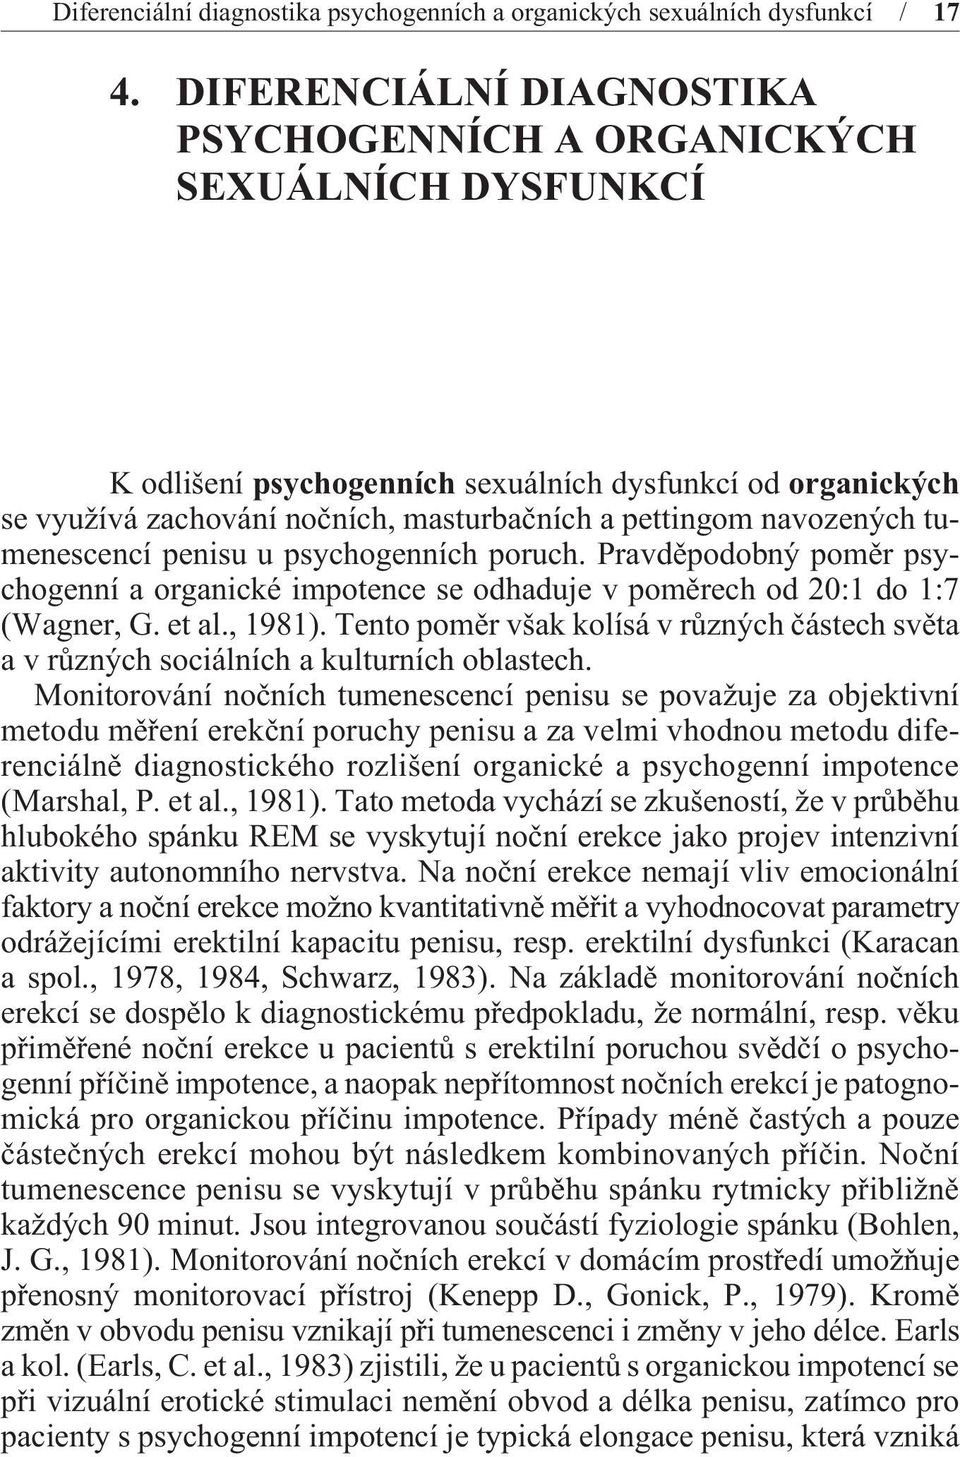 navozených tumenescencí penisu u psychogenních poruch. Pravdìpodobný pomìr psychogenní a organické impotence se odhaduje v pomìrech od 20:1 do 1:7 (Wagner, G. et al., 1981).